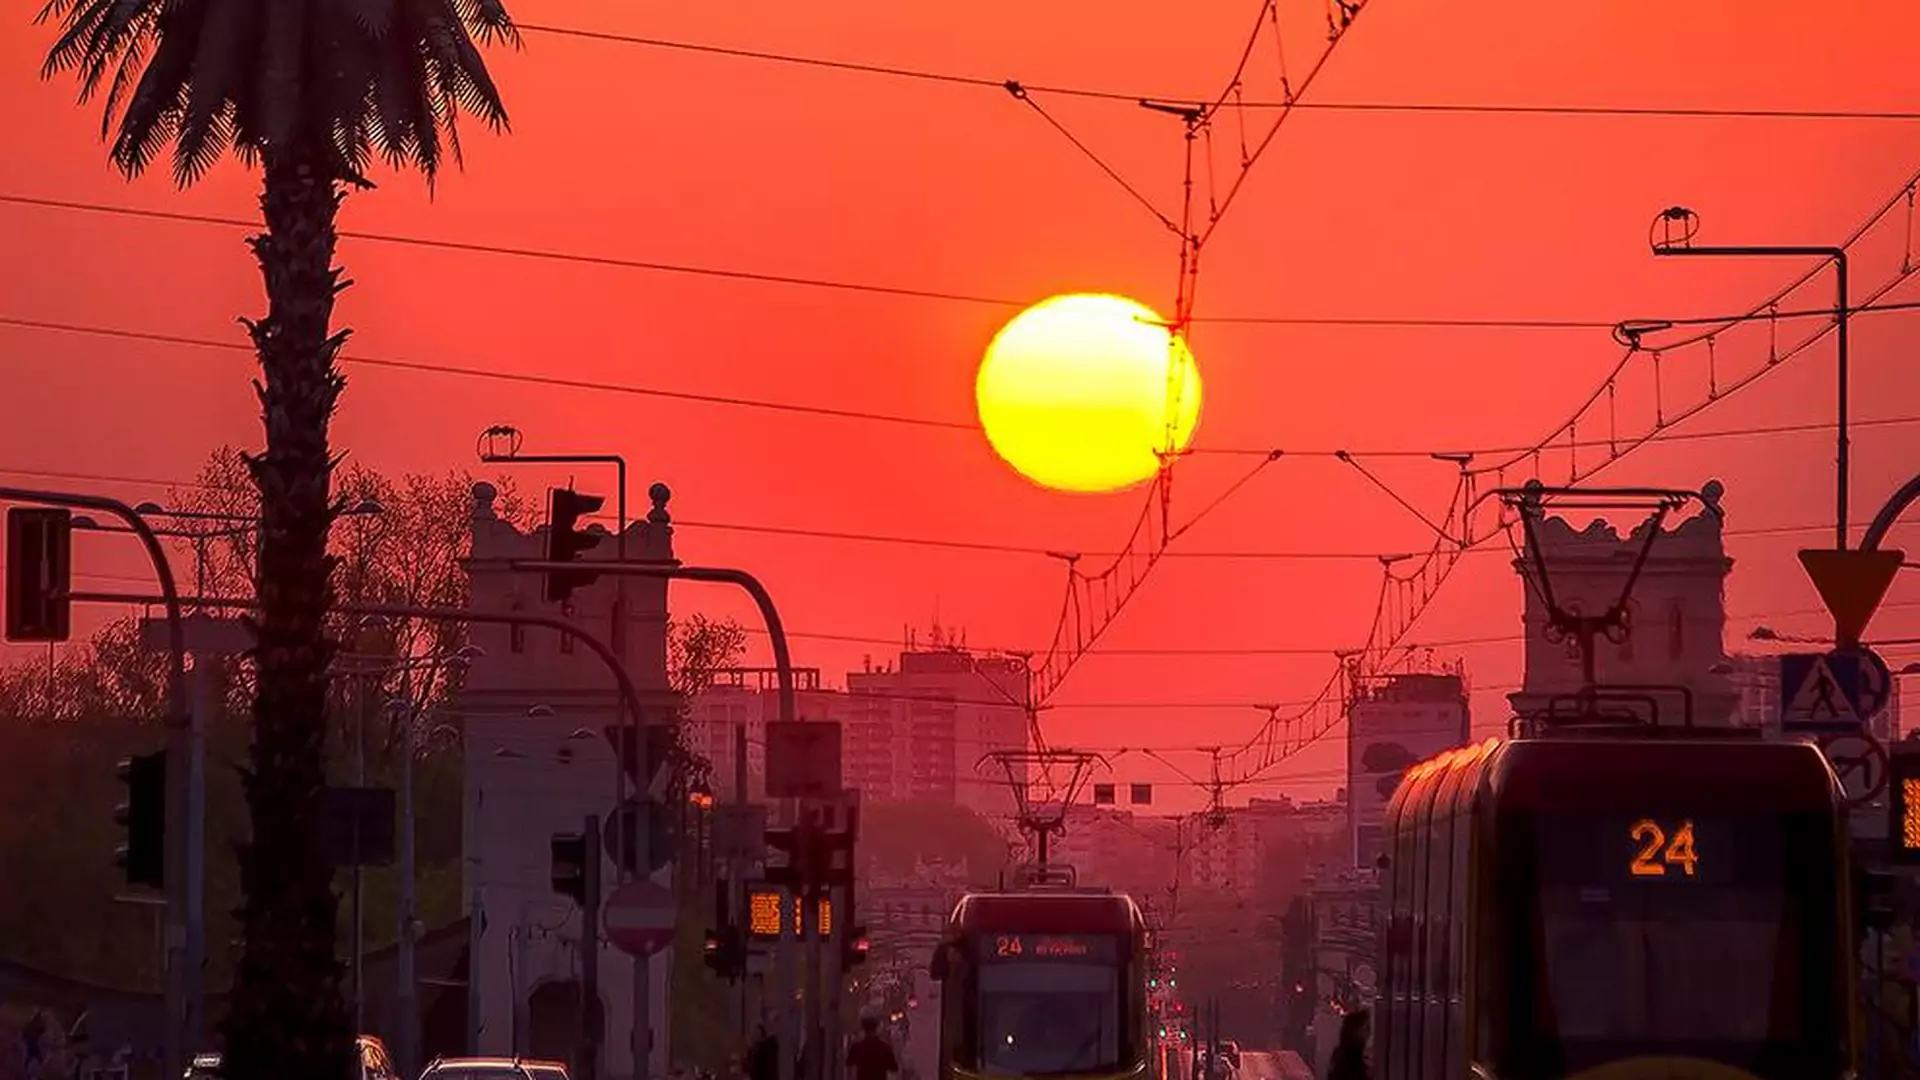 "Wygląda jak Egipt". Internauci z całego świata zajarani fotką warszawskiego wschodu słońca